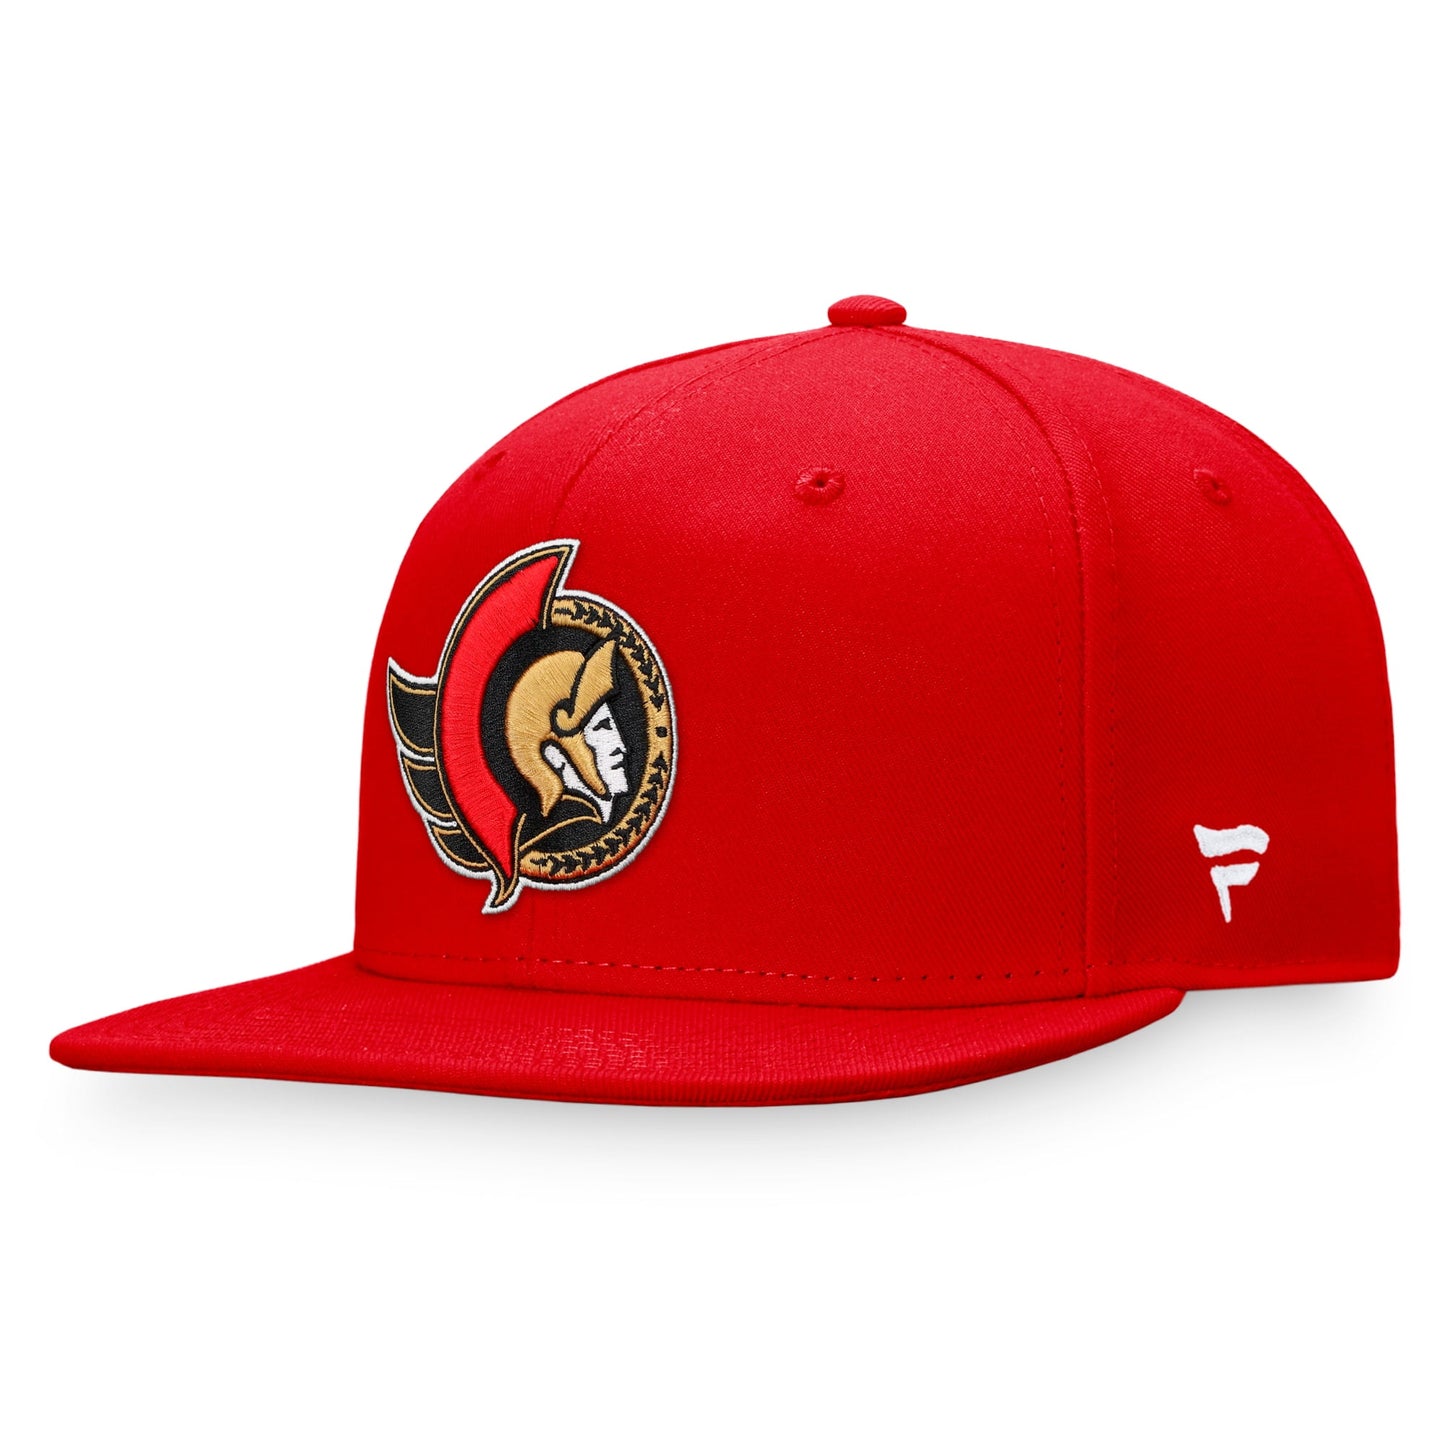 Men's Fanatics Branded Red Ottawa Senators Core Primary Logo Fitted Hat